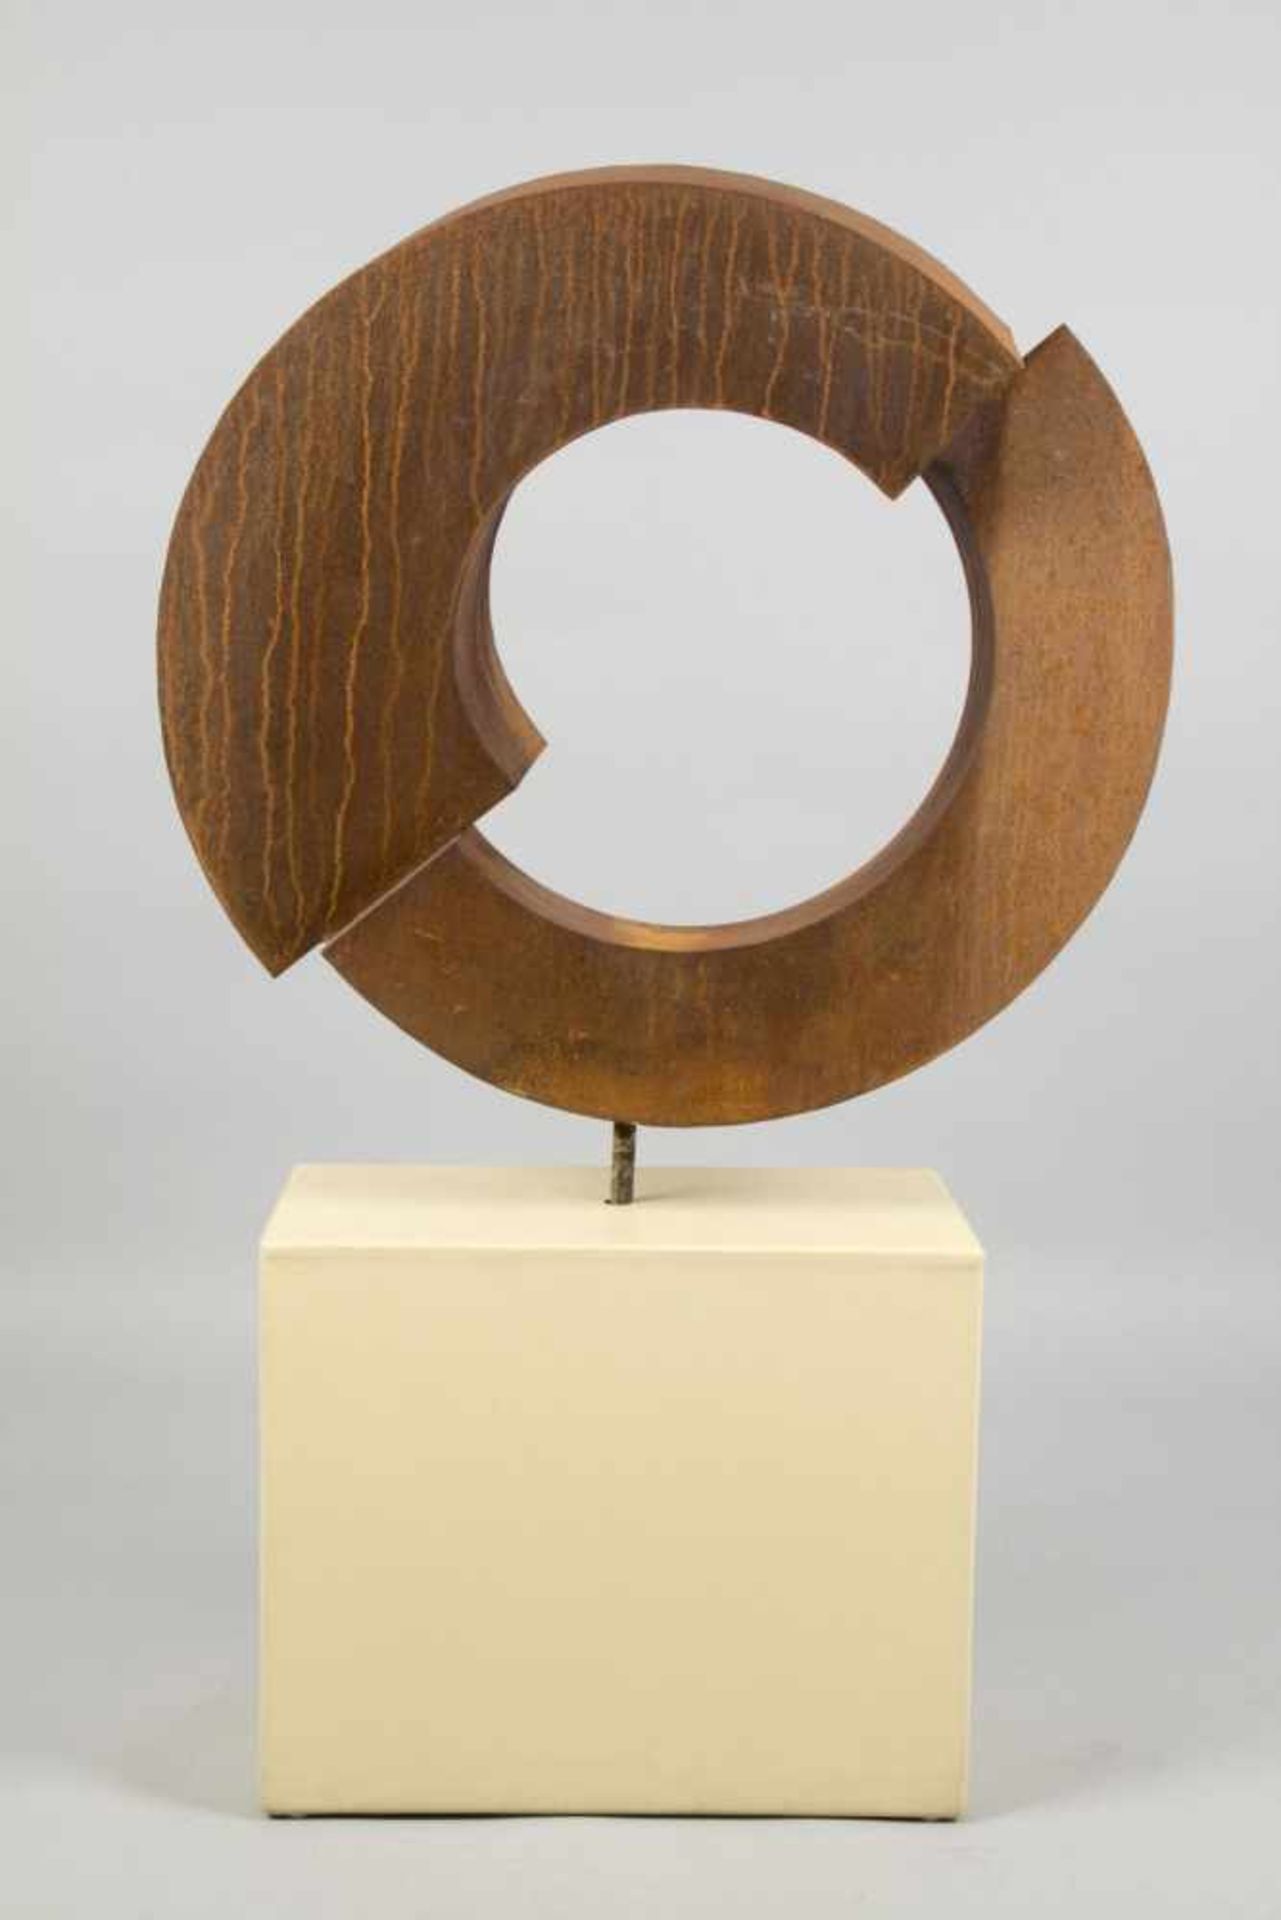 Unbekannt, 20. Jh.Aufgeschnittener Kreis. Skulptur aus korrodiertem Eisen. 81 x 85 cm. Die - Bild 4 aus 8